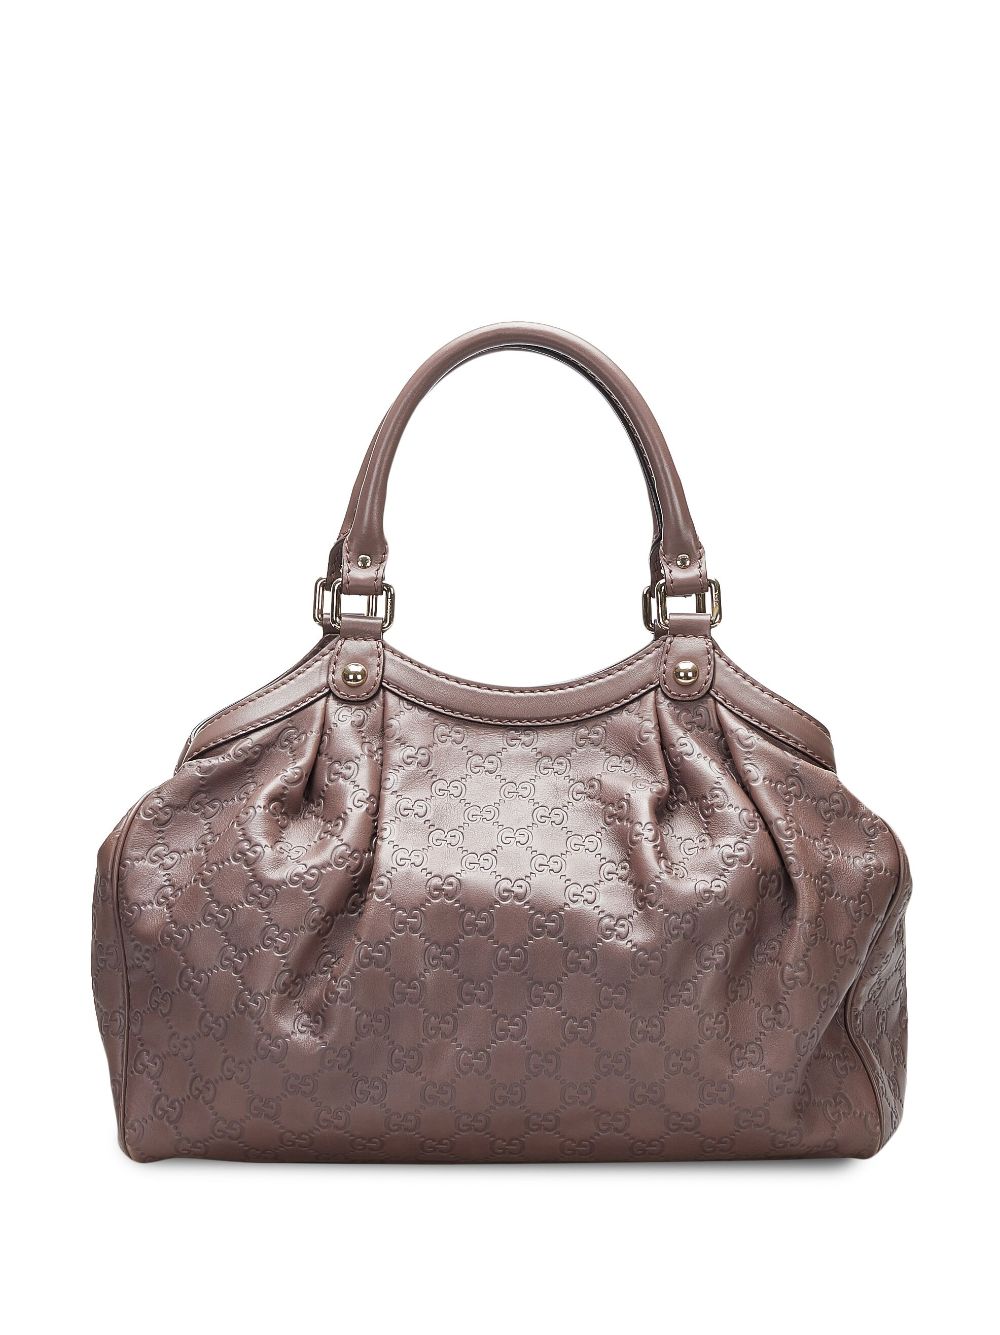 Gucci Pre-Owned Guccissima Sukey tote bag - Bruin